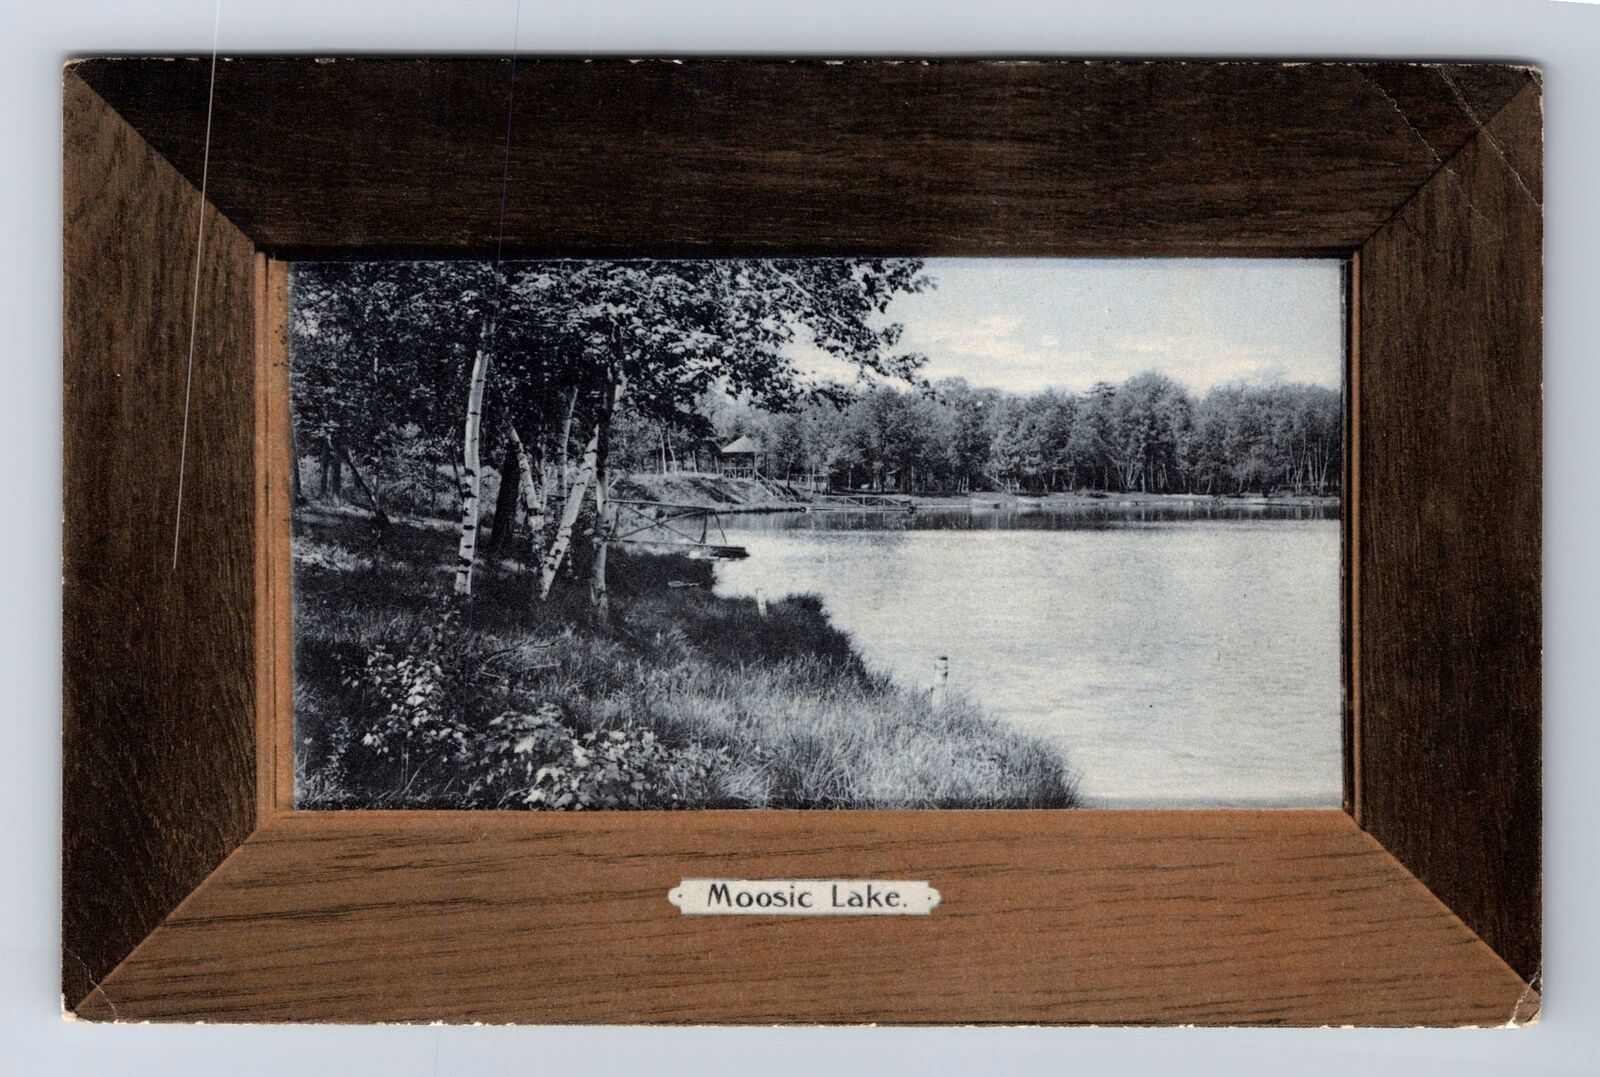 Moosic Lake PA-Pennsylvania, Scenic View, Antique, Vintage Souvenir Postcard